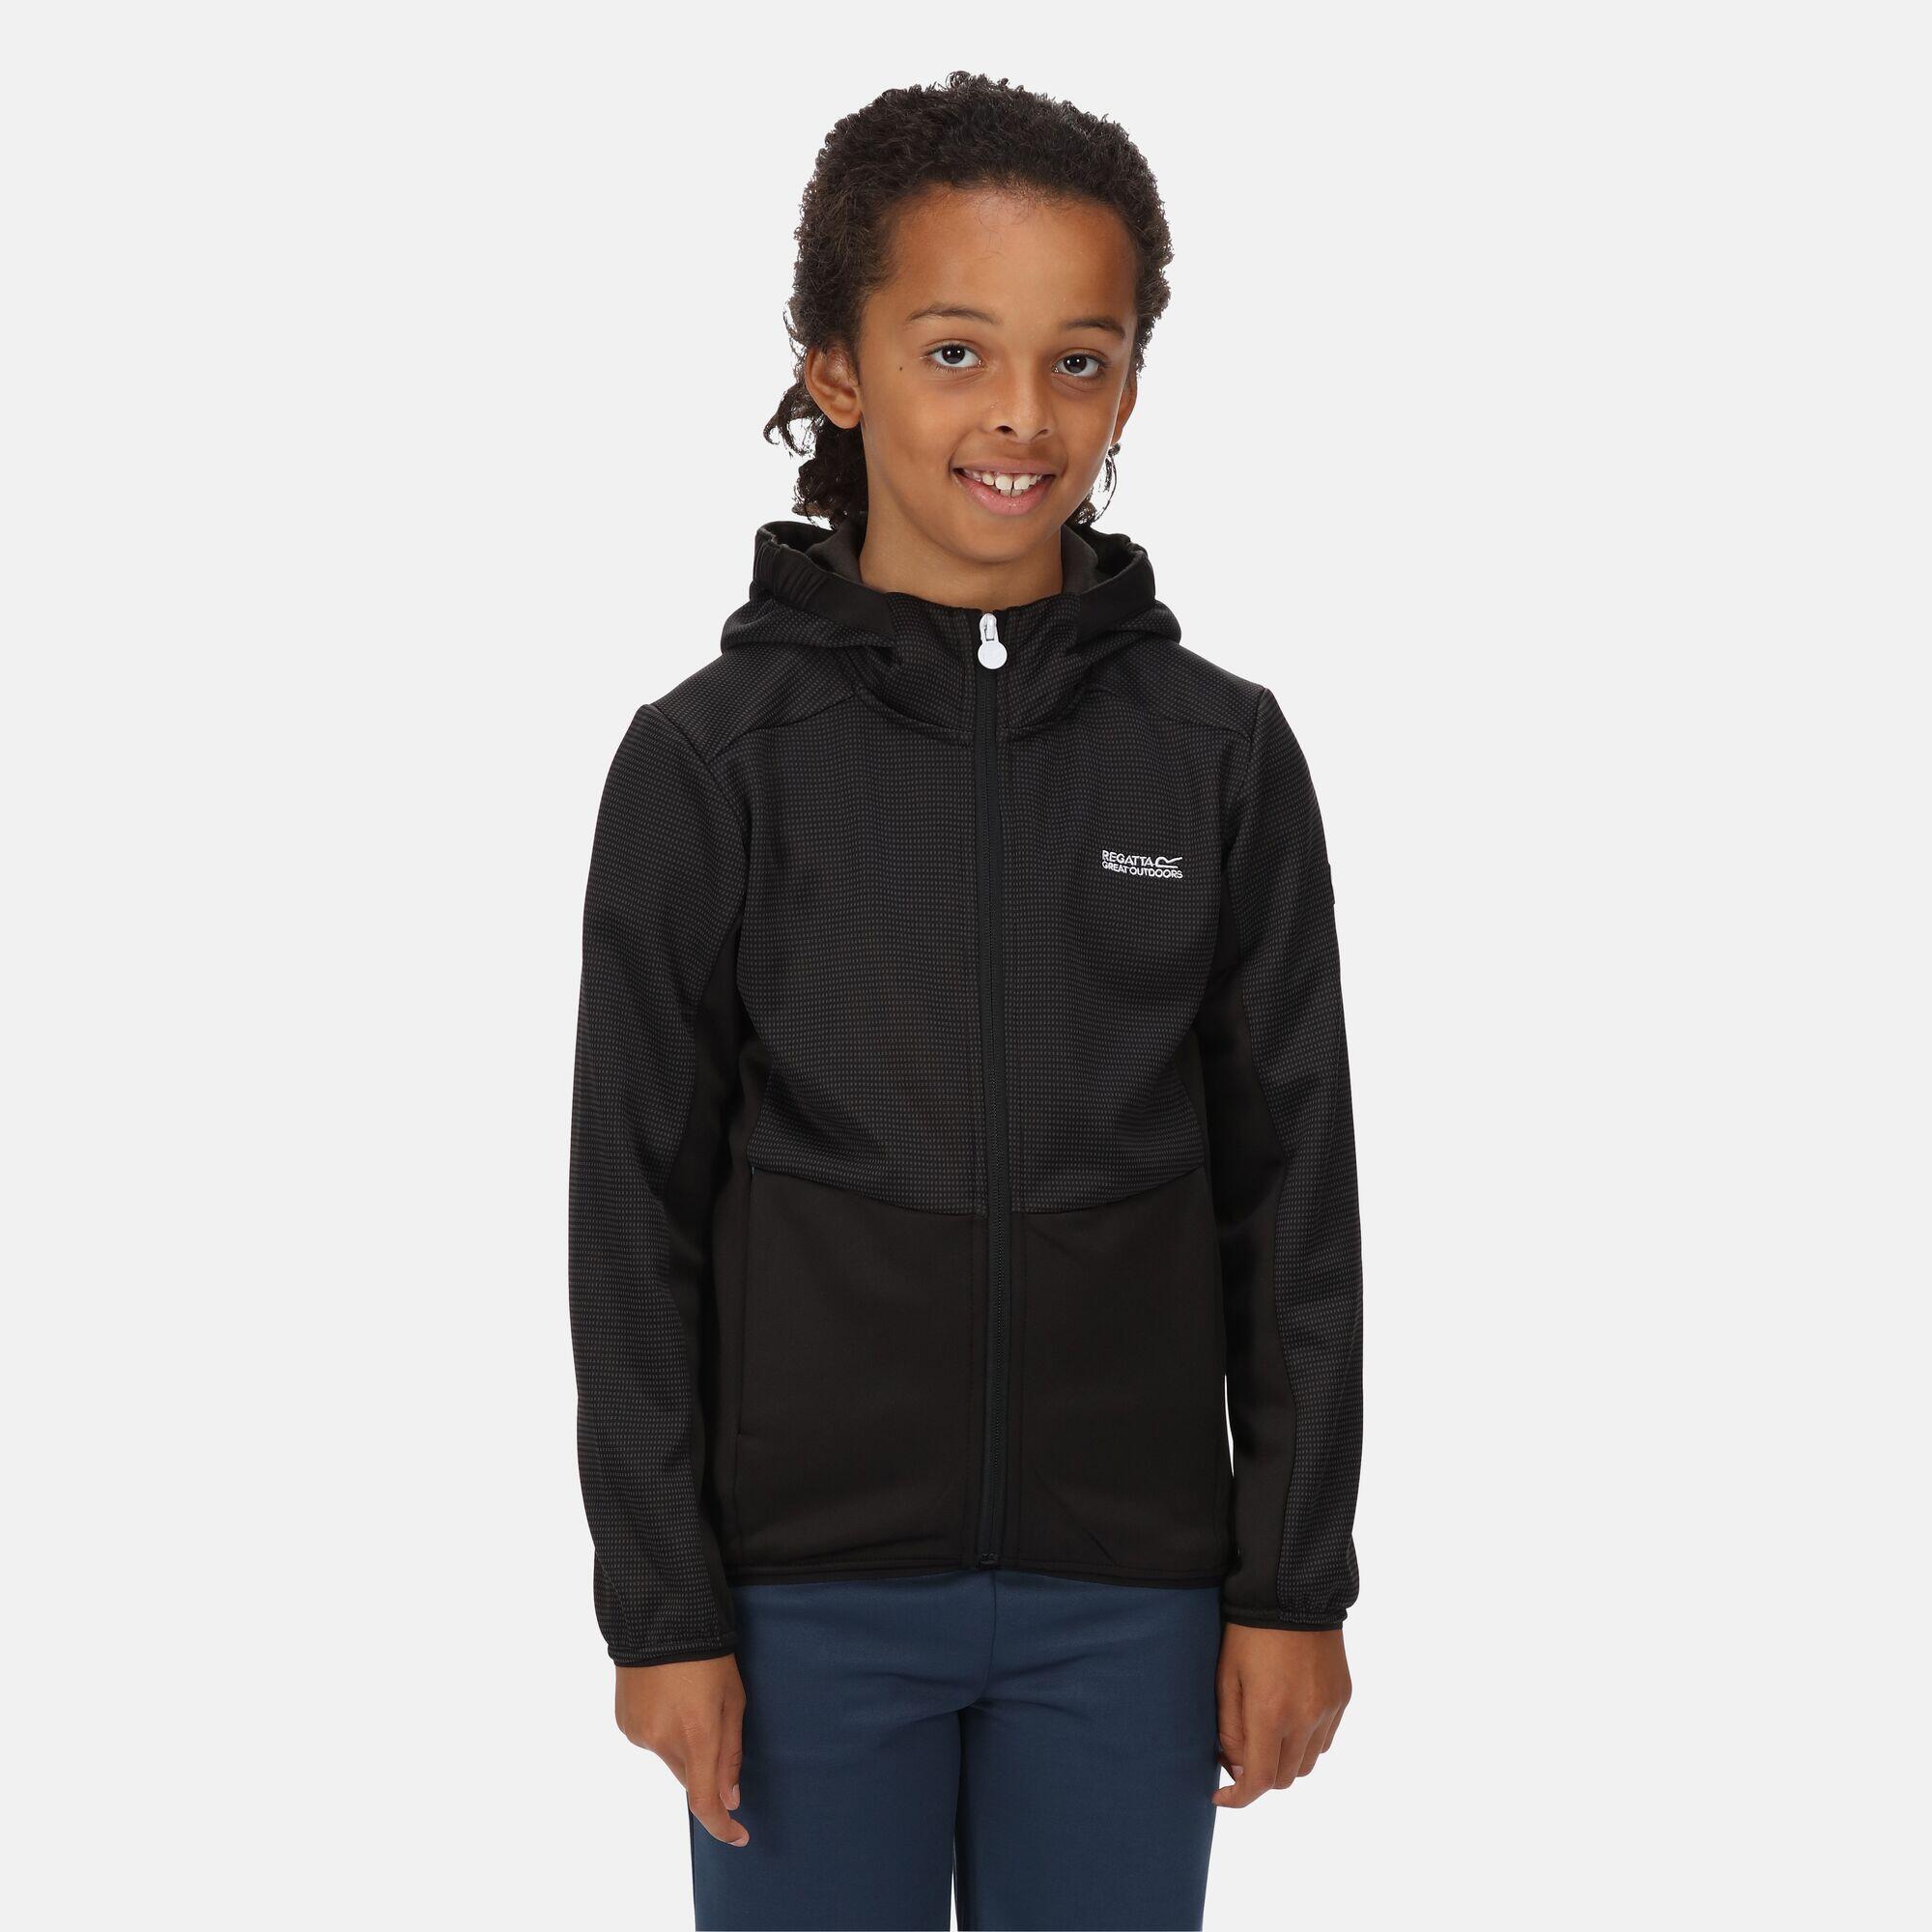 Junior Highton Walking Kids Full Zip Fleece - Black 1/5